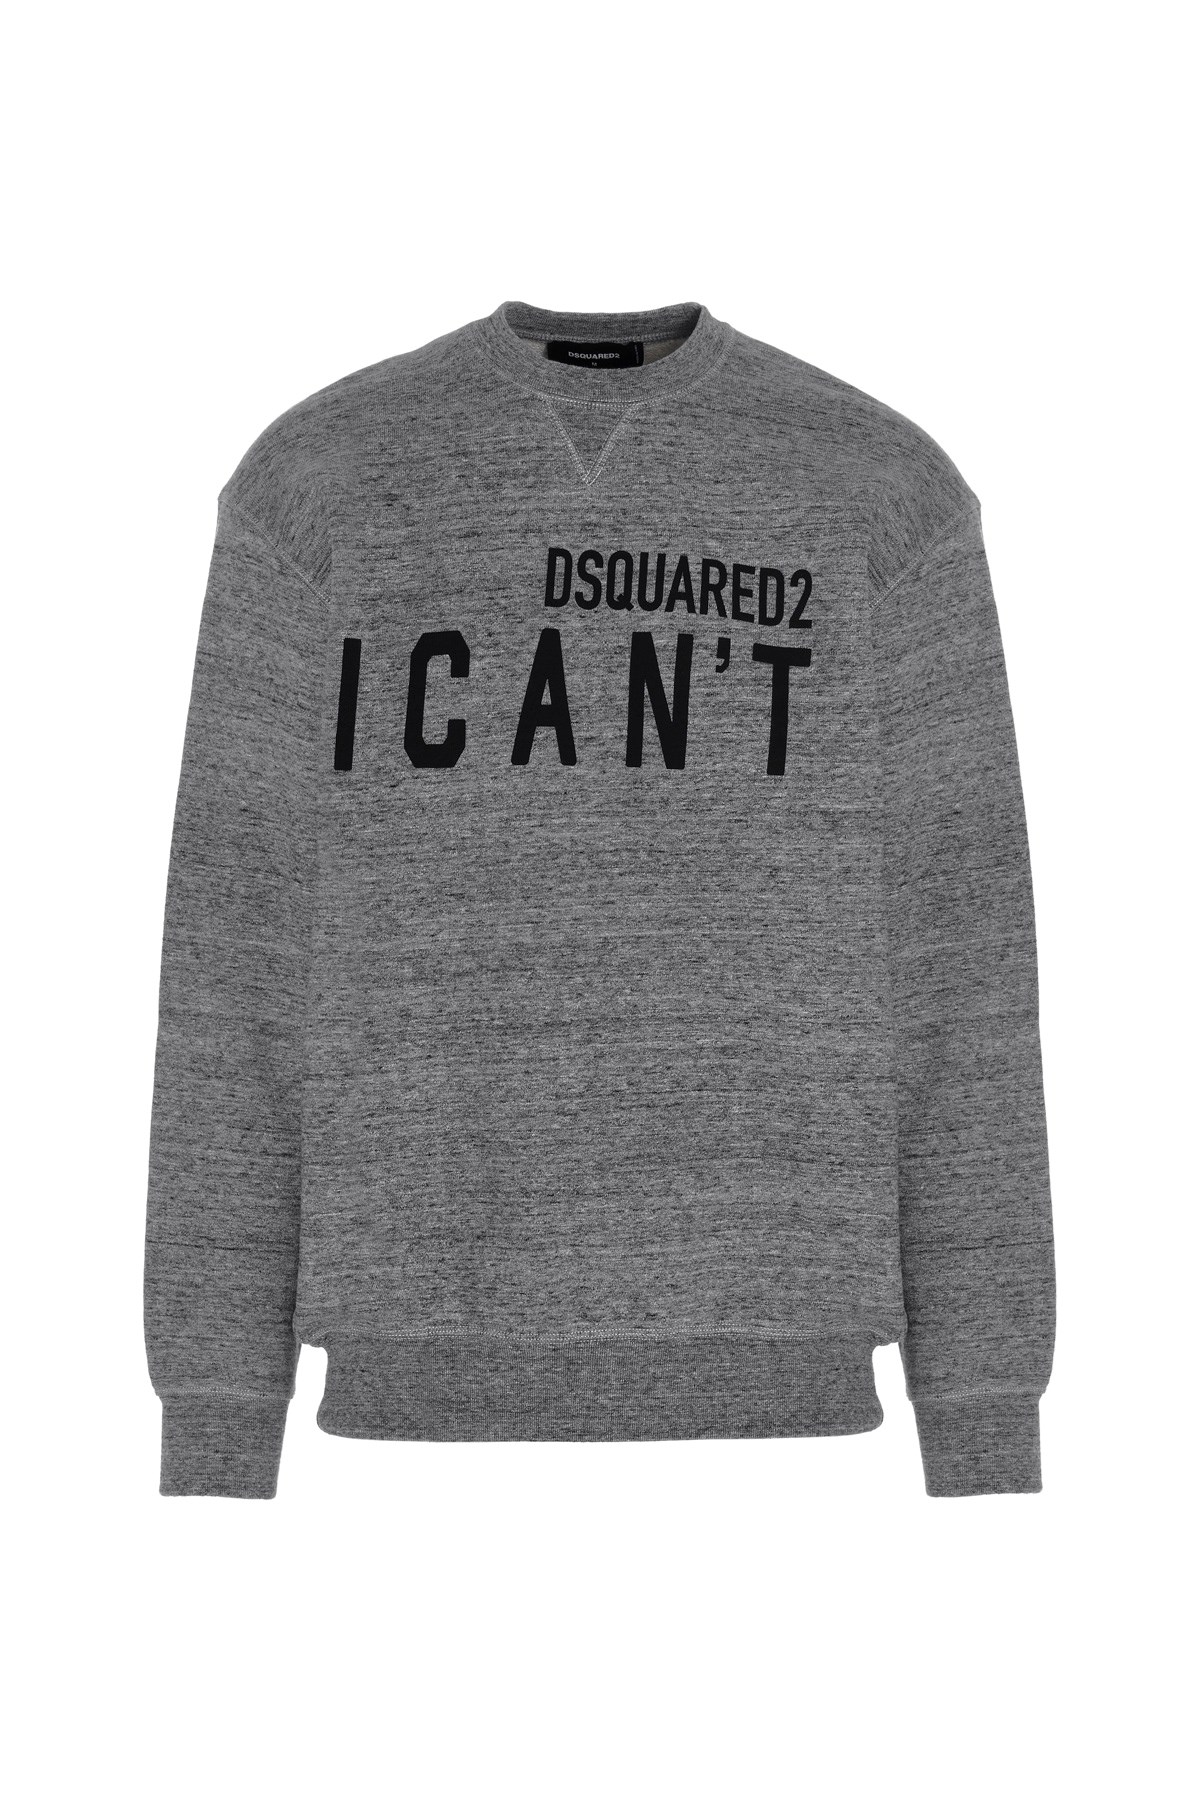 DSQUARED2 Sweatshirt 'I Can't'